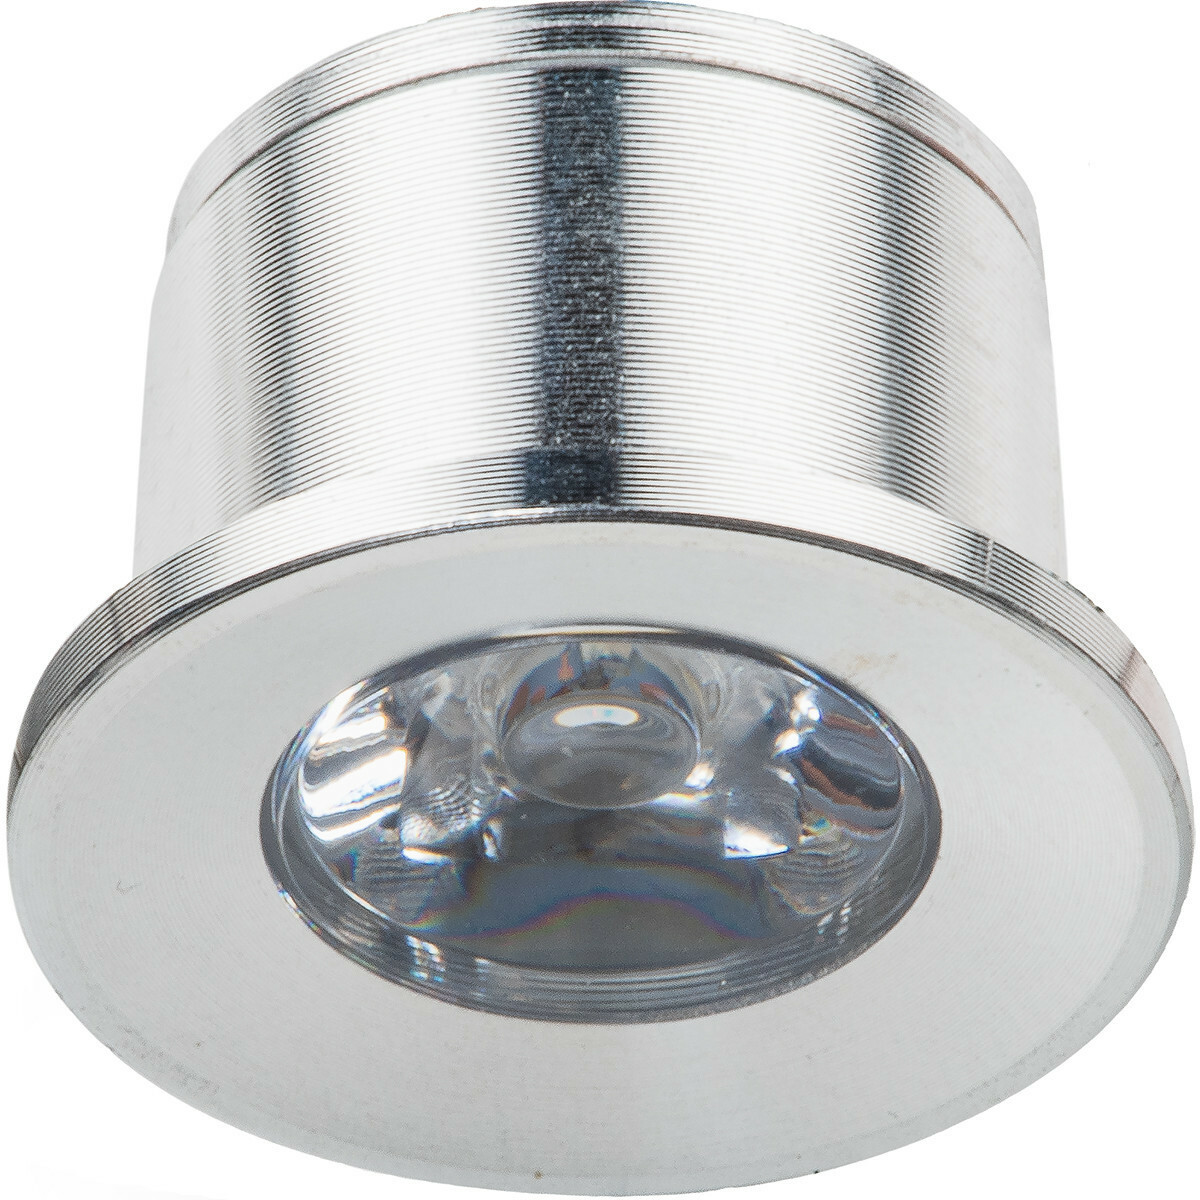 LED Veranda Spot Verlichting 1W Warm Wit 3000K - Inbouw - Dimbaar - Rond - Mat Zilver - Aluminium - Ø31mm | BES